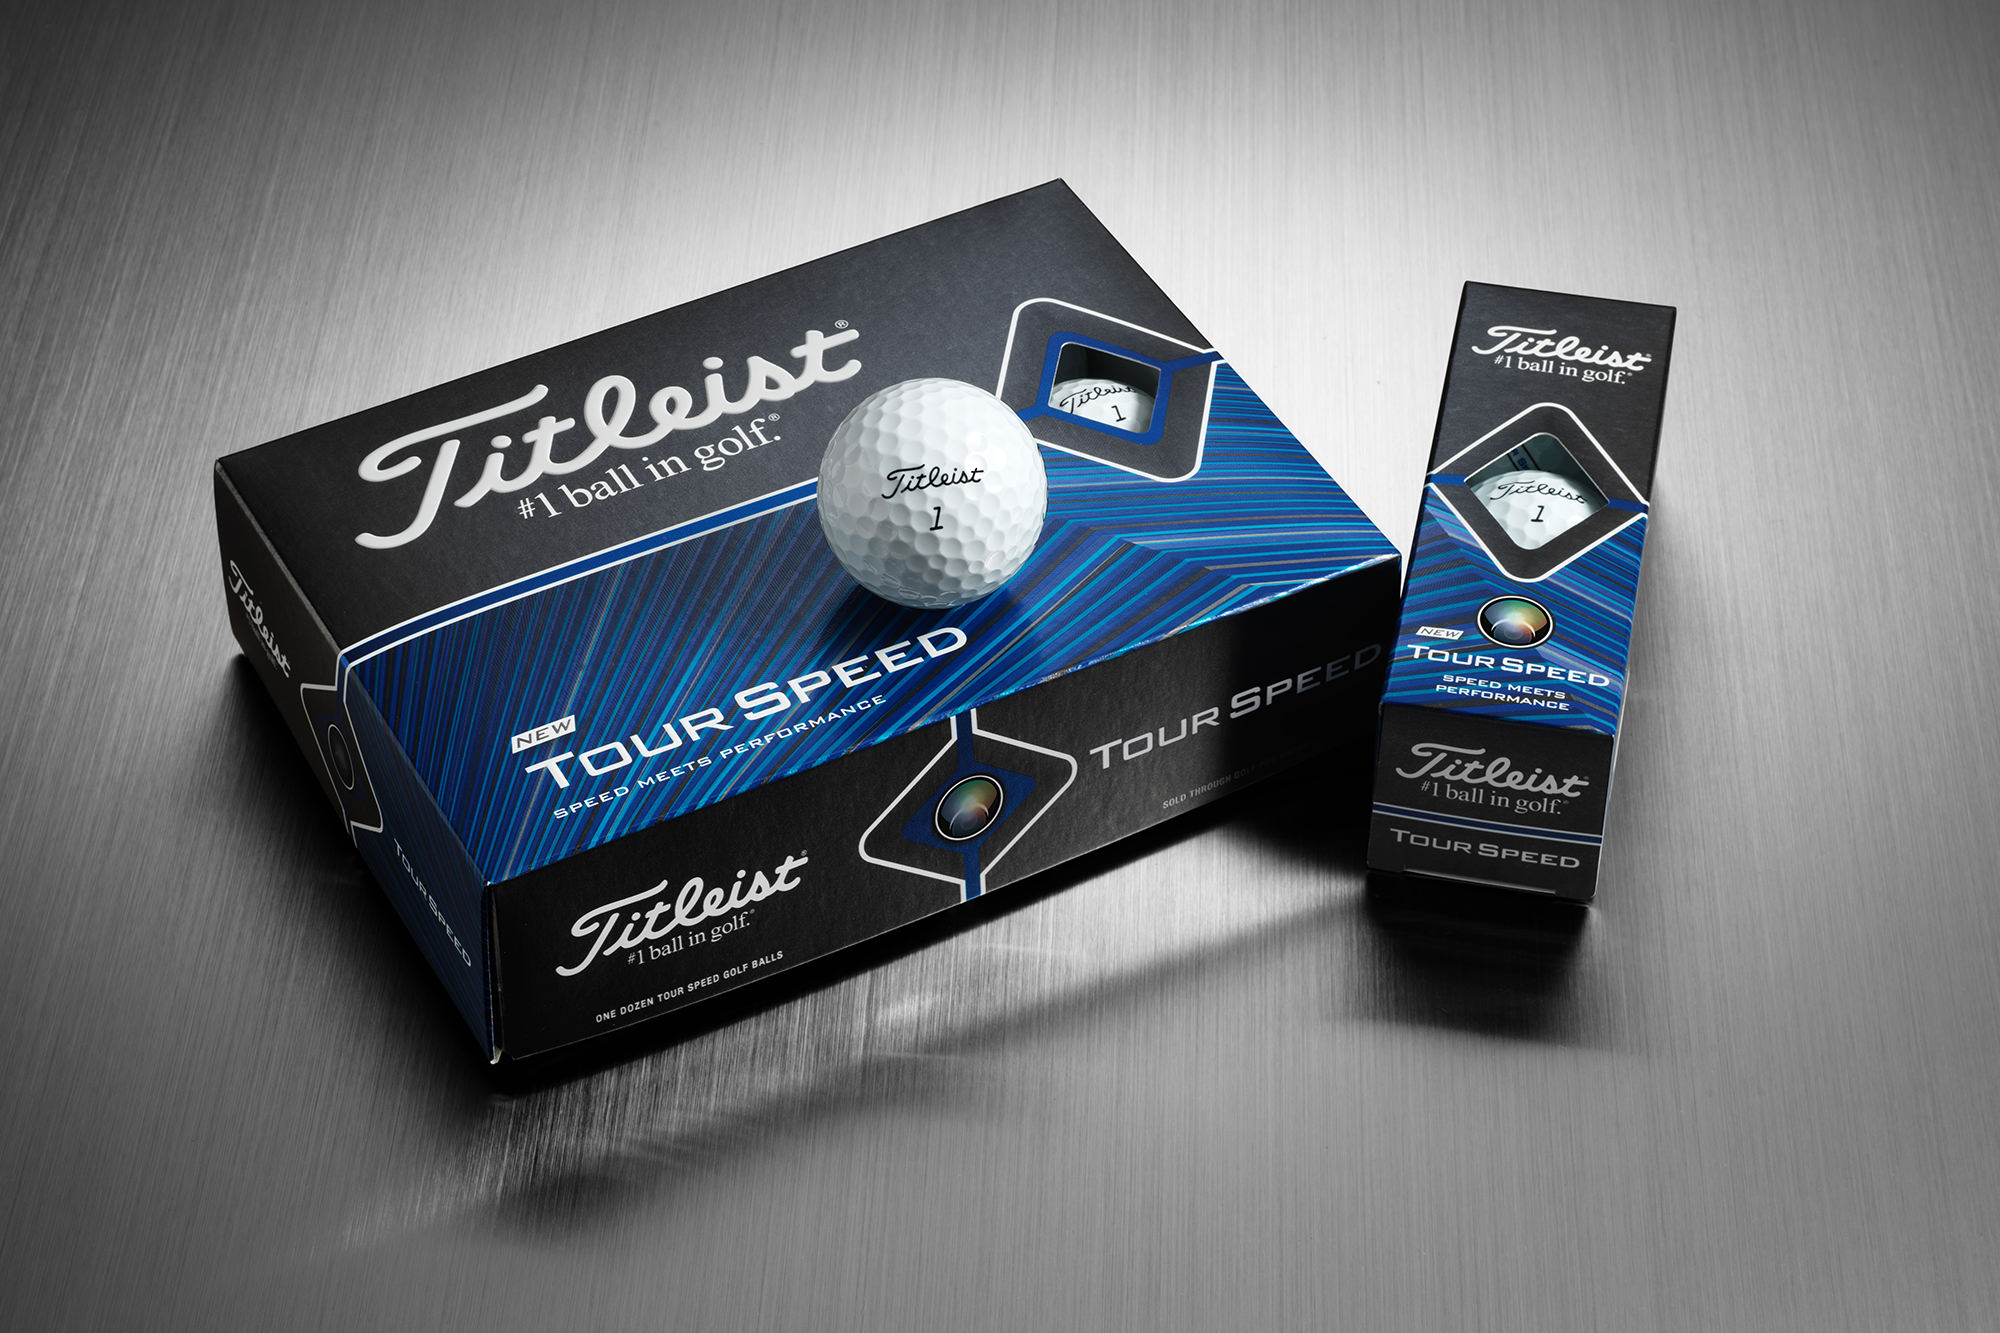 Titleist Tour Speed golf ball review